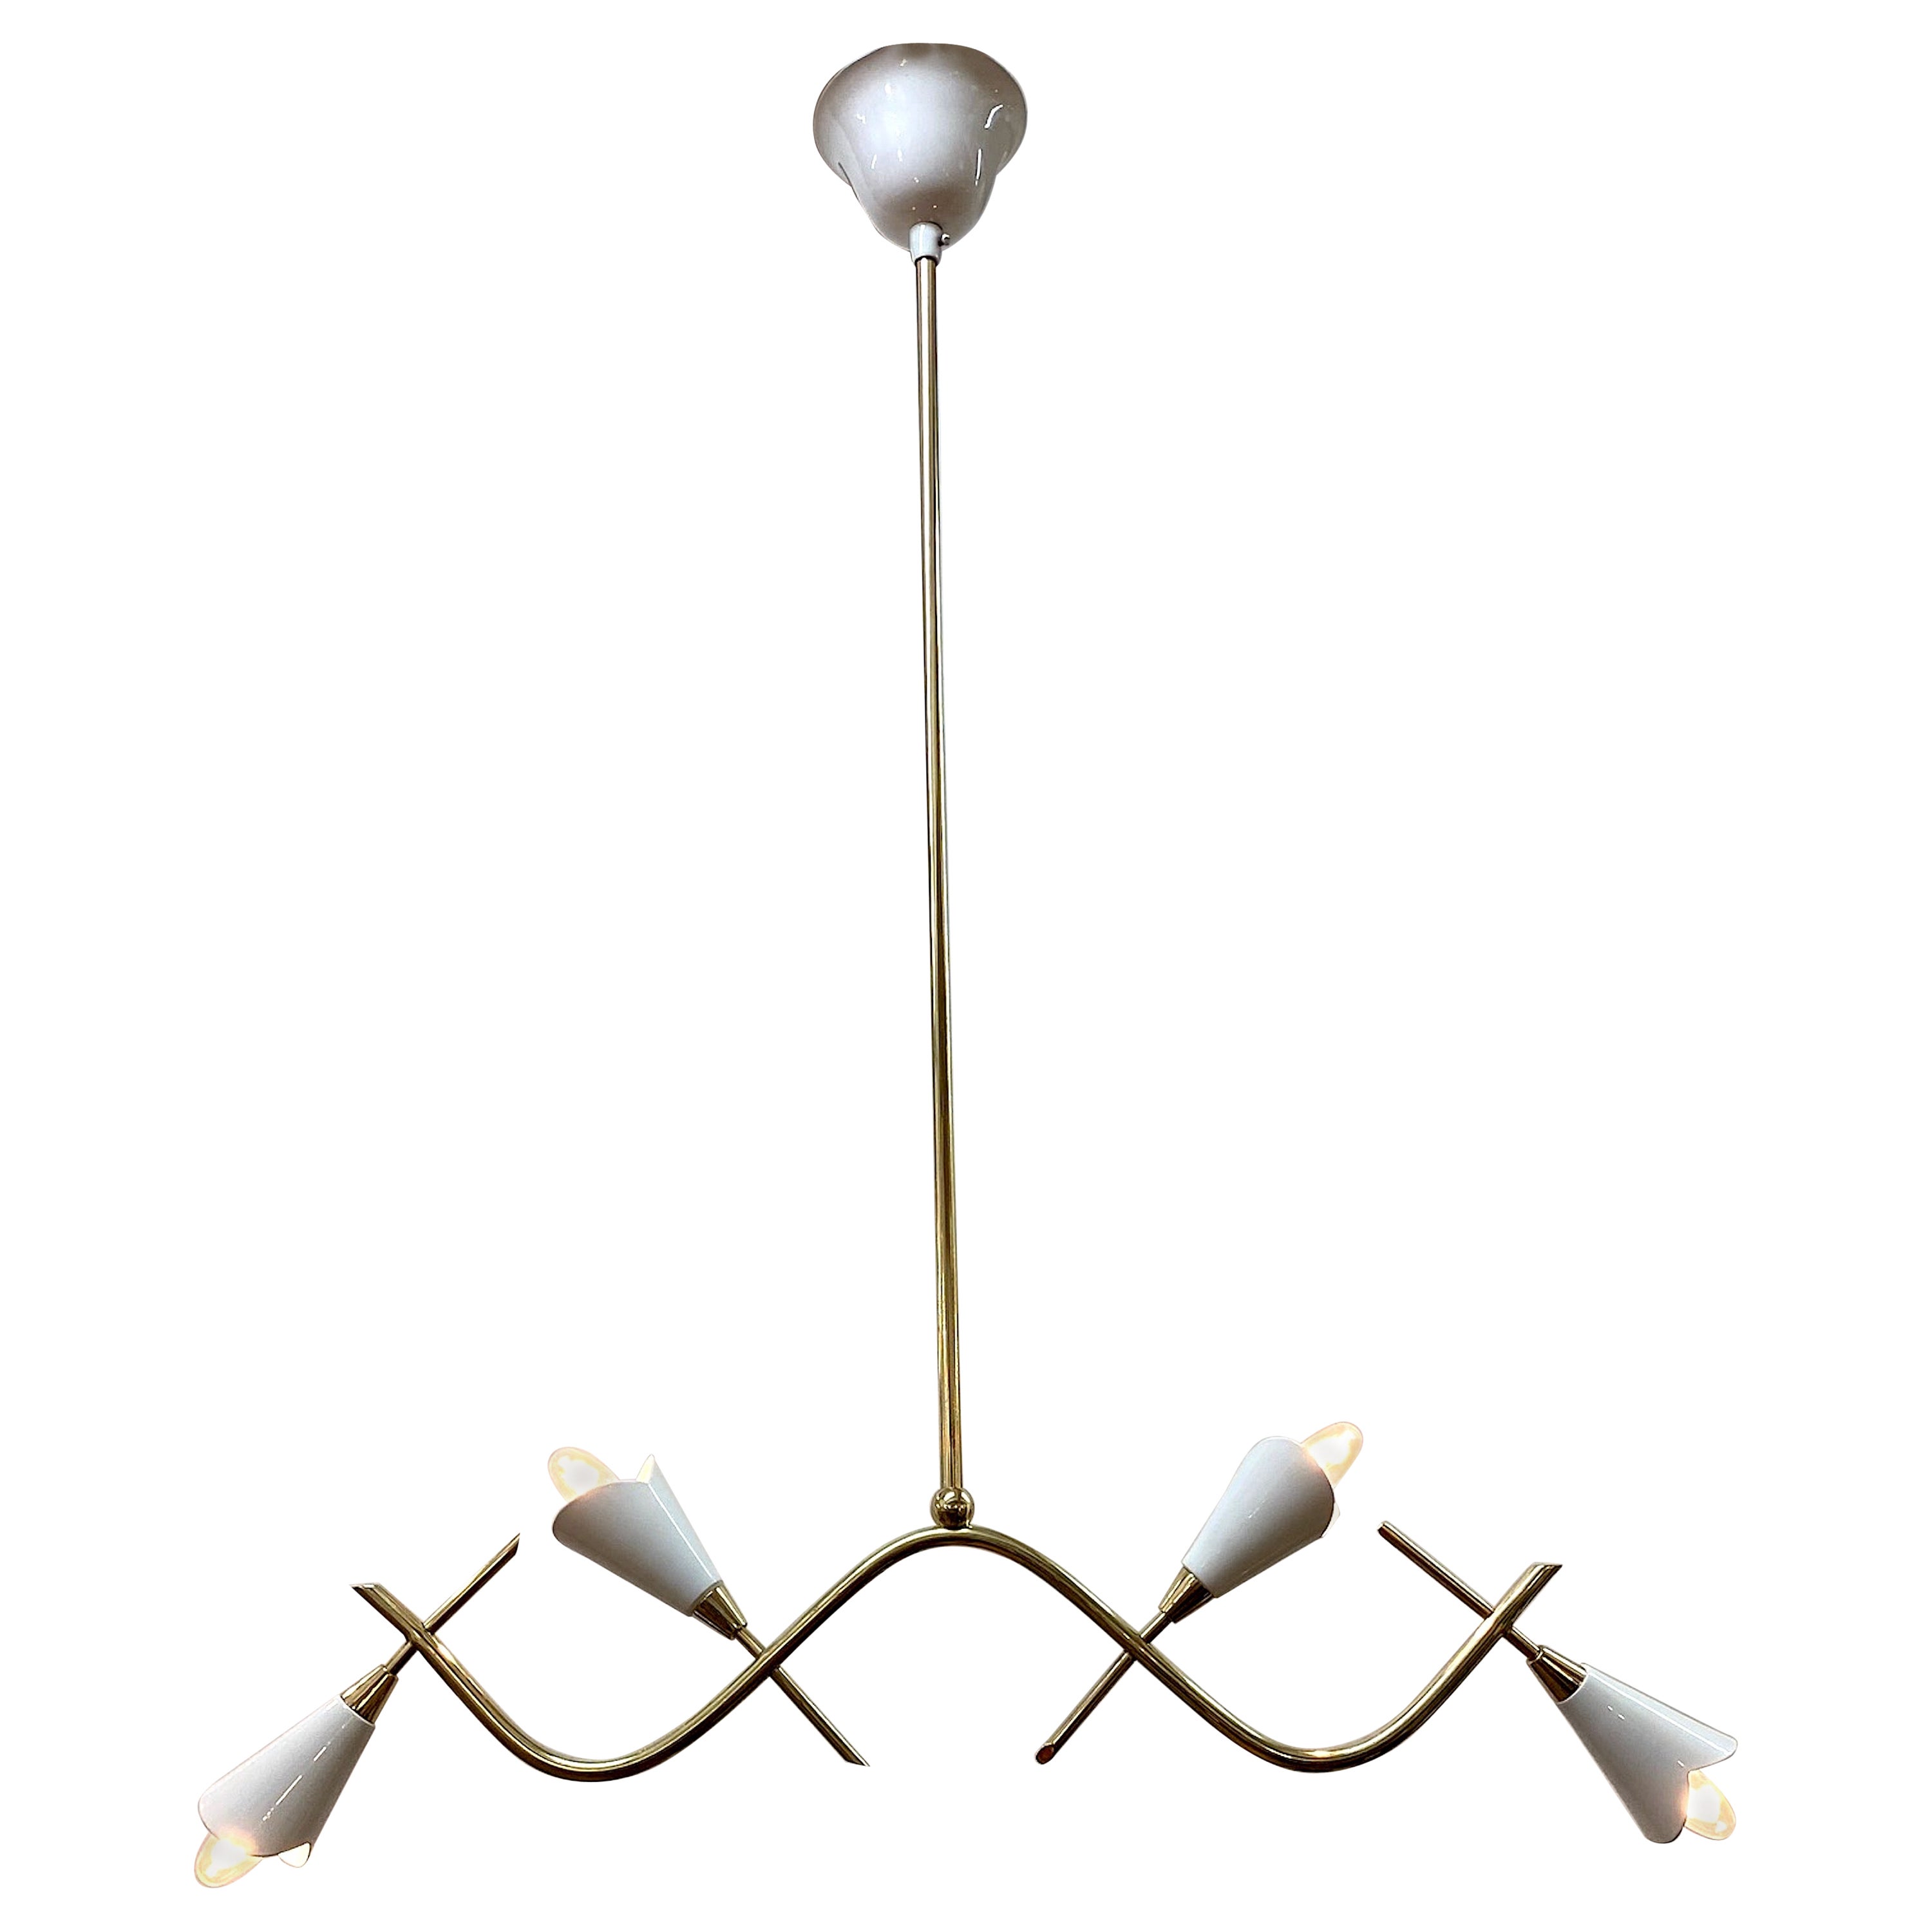 Italian 1950s Brass and White Enamel Pendant Light Chandelier For Sale